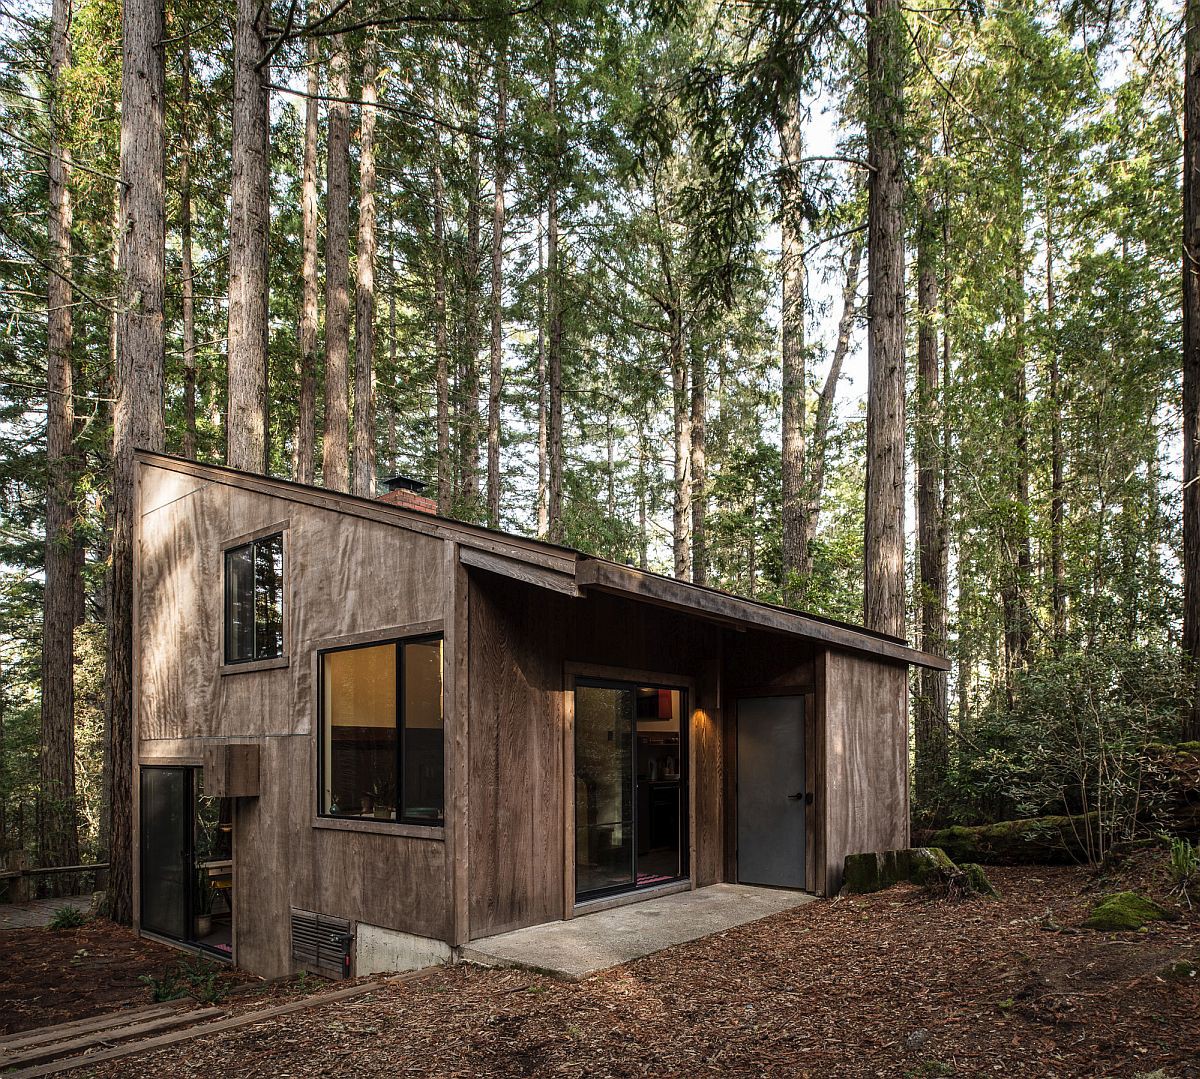 Một ngôi nhà gỗ đem đến một cảm giác gần gũi với thiên nhiên. Hình ảnh này khiến bạn cảm thấy tràn đầy niềm yêu thích với kiến trúc đặc biệt và khung cảnh rừng xanh bao quanh.